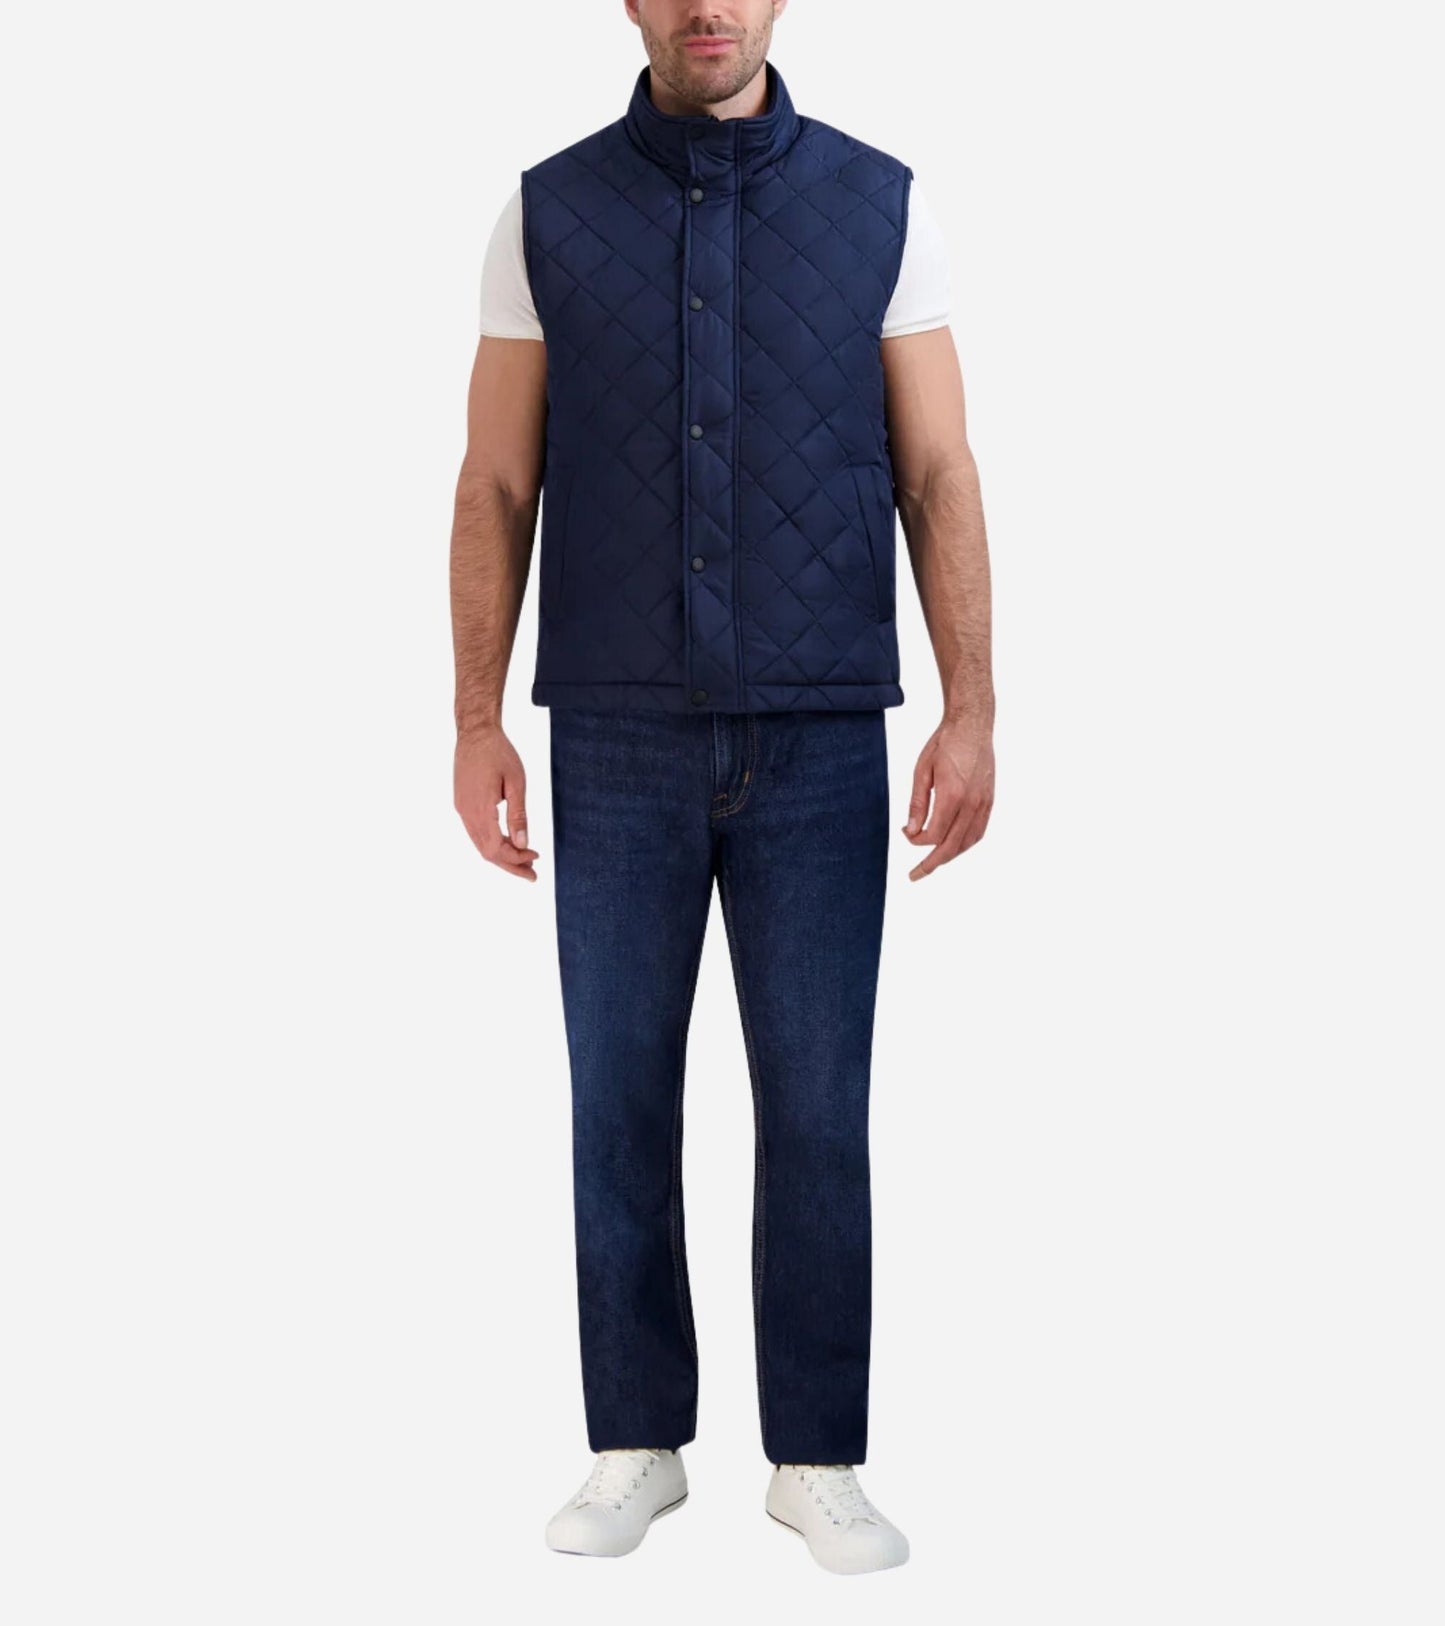 Men's Zip-Up Vest (8020030390519)